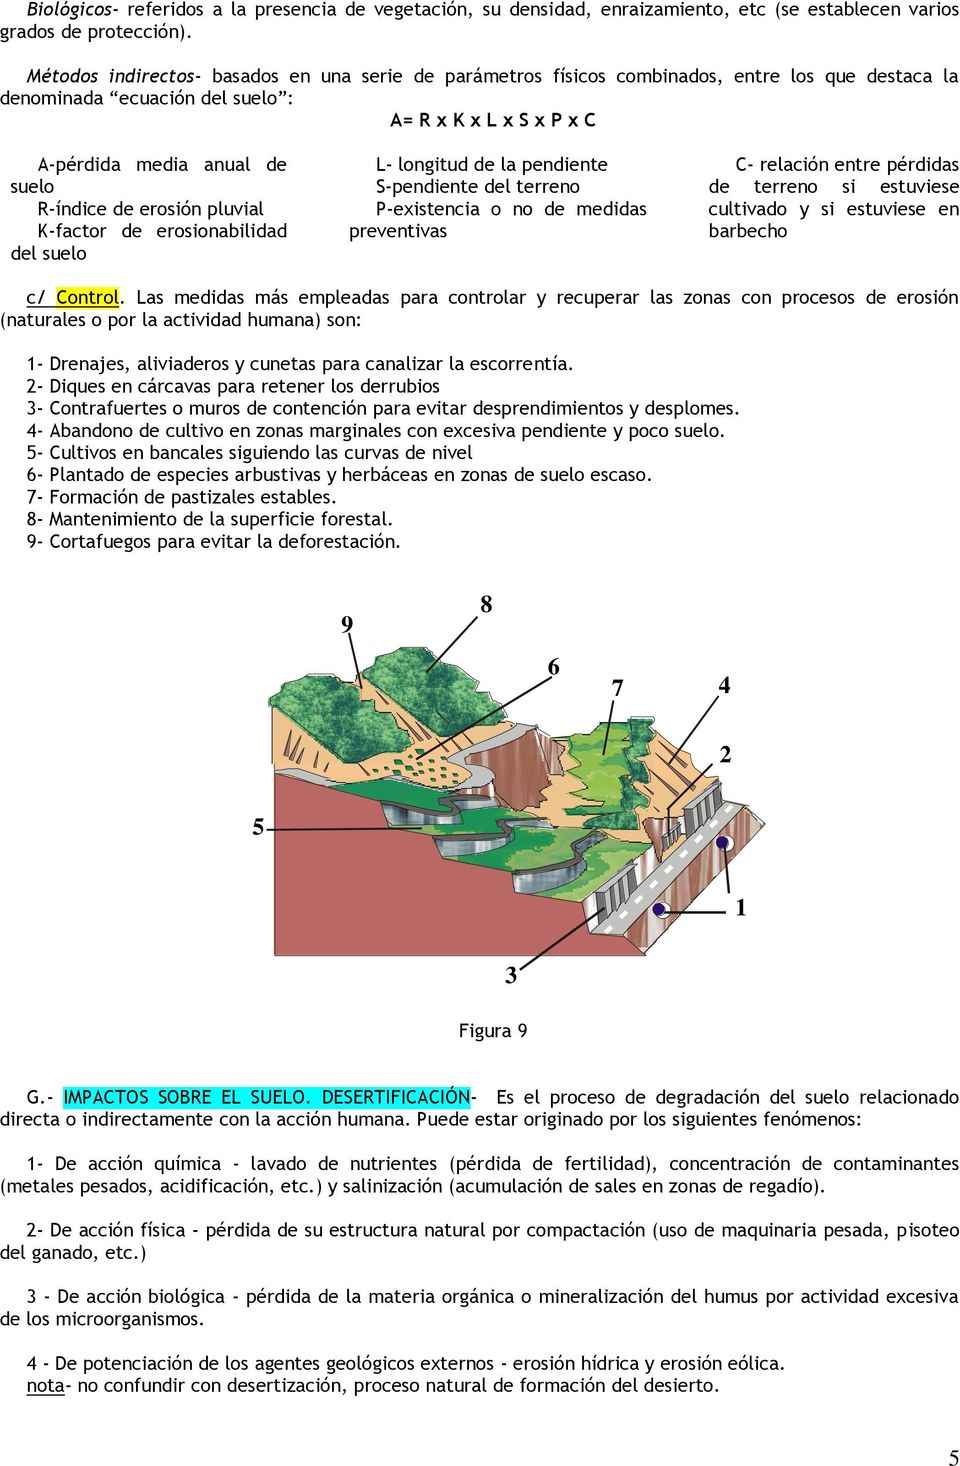 erosión pluvial K-factor de erosionabilidad del suelo L- longitud de la pendiente S-pendiente del terreno P-existencia o no de medidas preventivas C- relación entre pérdidas de terreno si estuviese